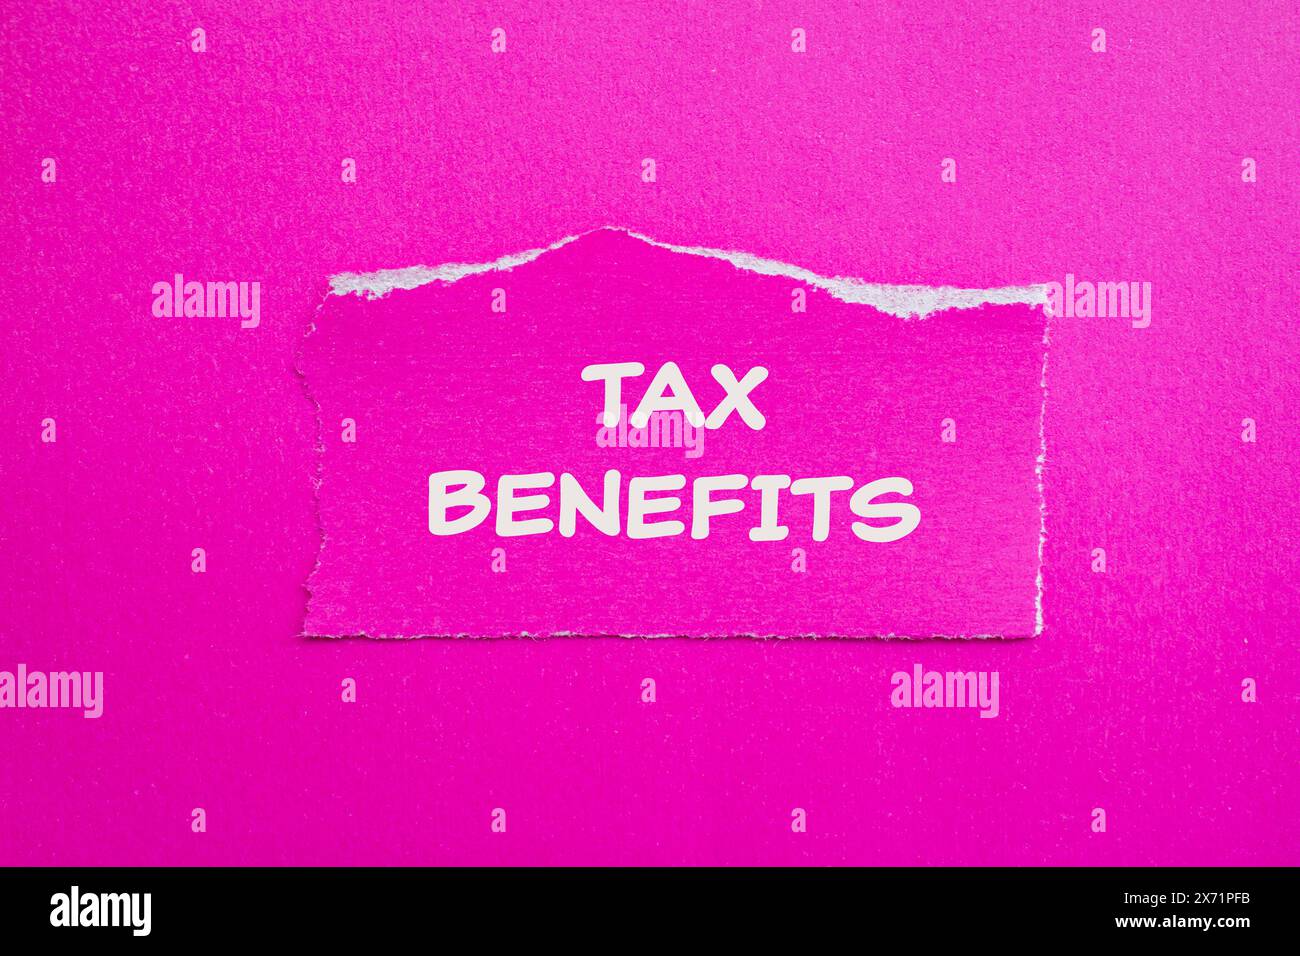 Mots sur les avantages fiscaux écrits sur du papier déchiré avec un fond rose. Symbole d'avantages fiscaux conceptuels. Copier l'espace. Banque D'Images